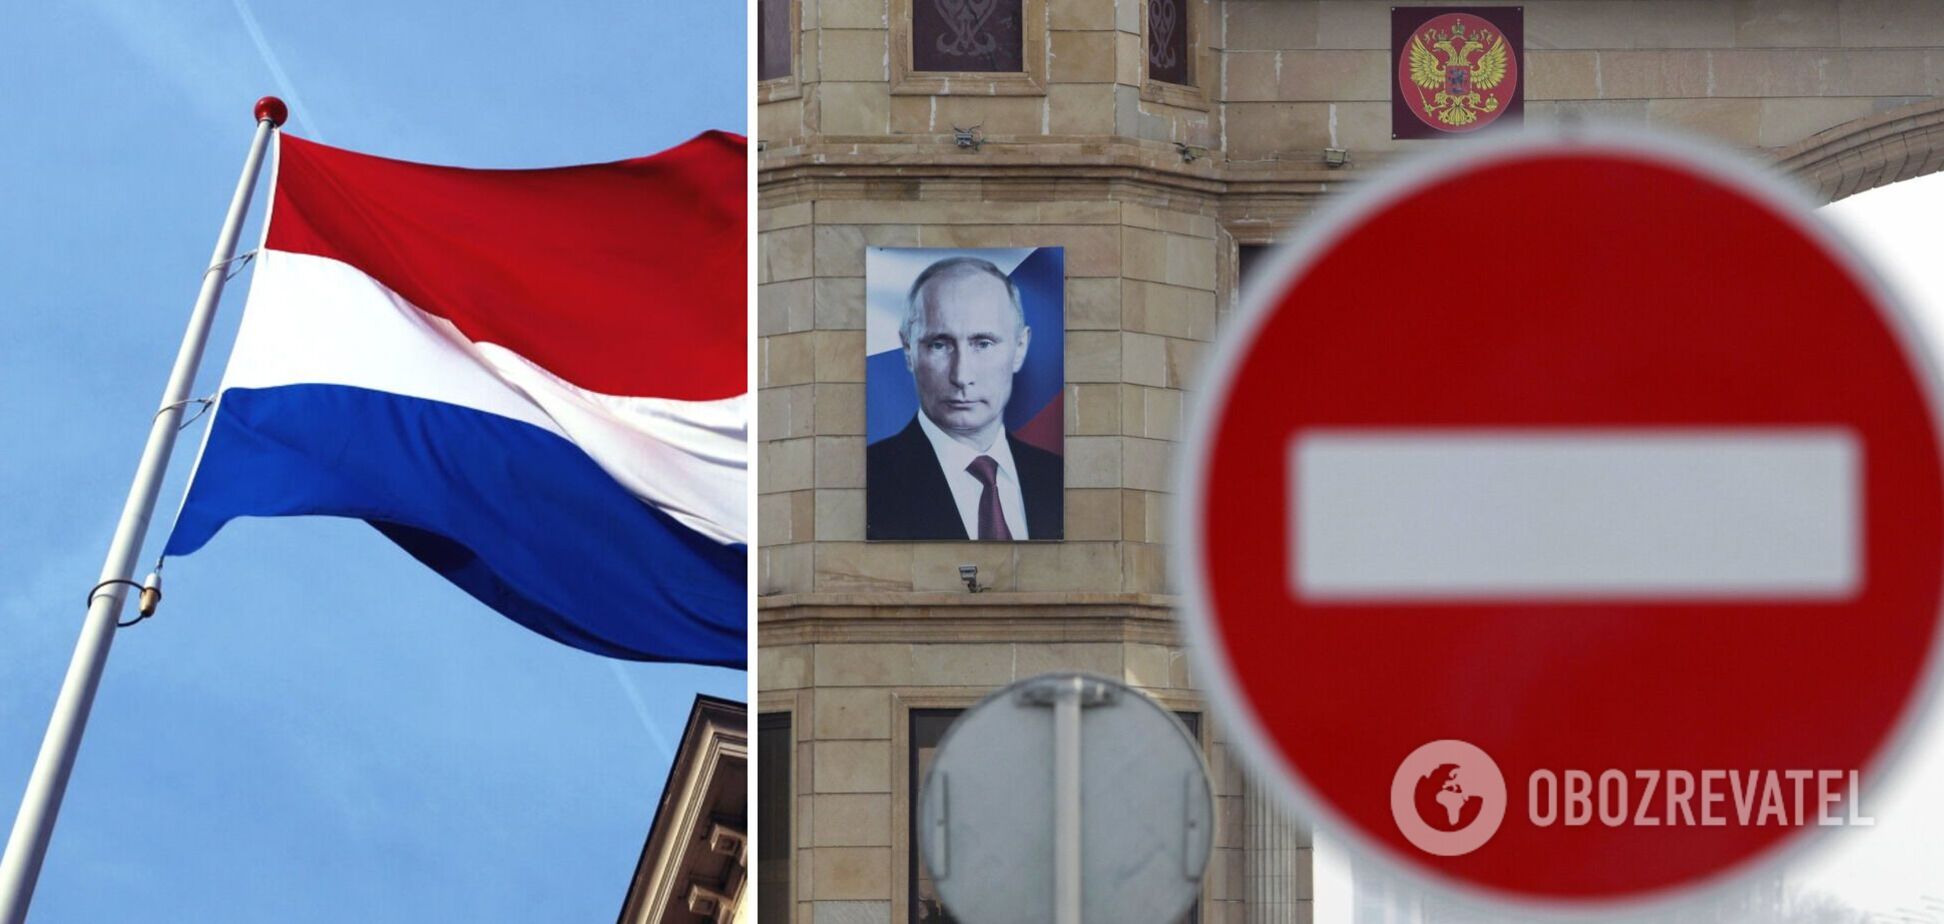 Нидерланды планируют отказаться от российского газа уже в 2022 году